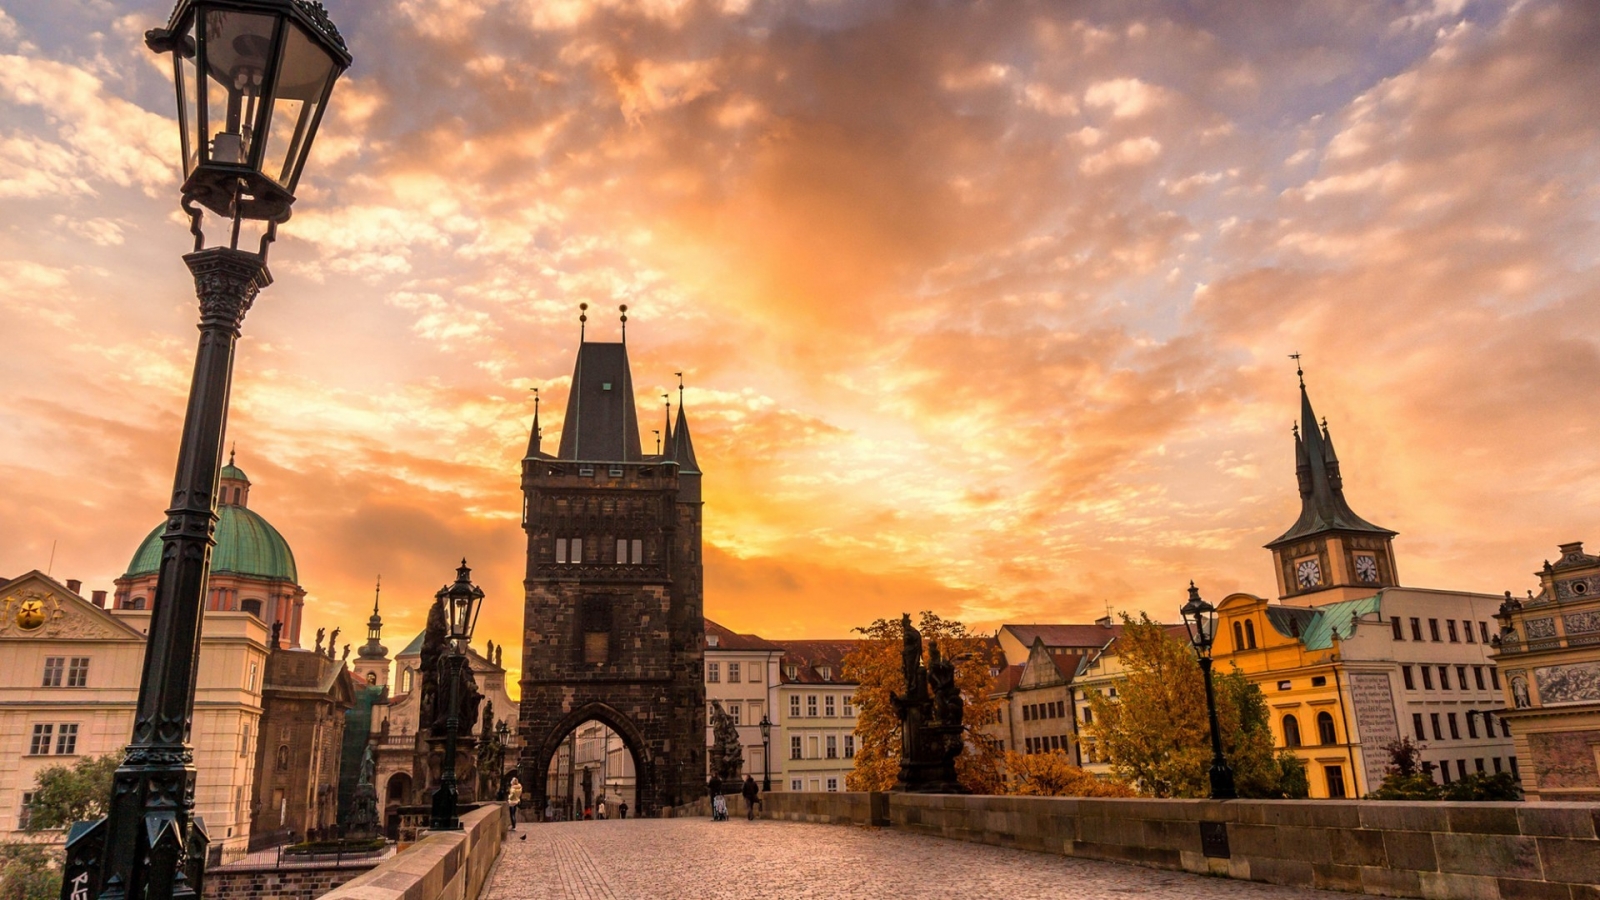 Sunset in Prague for 1600 x 900 HDTV resolution